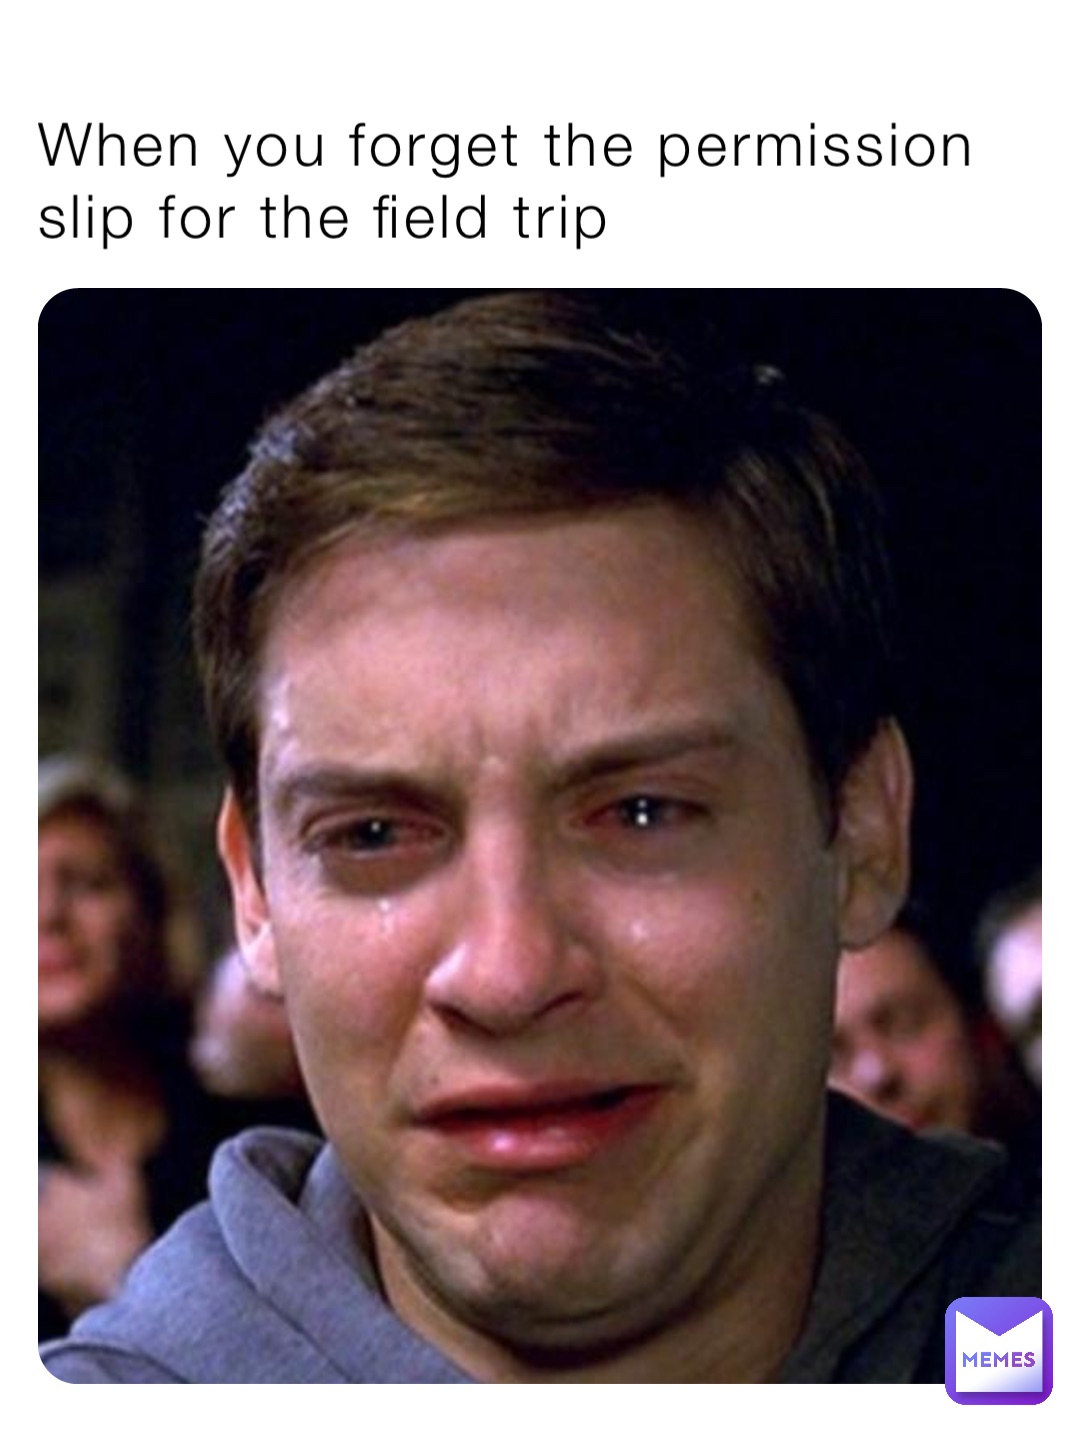 field trip today meme